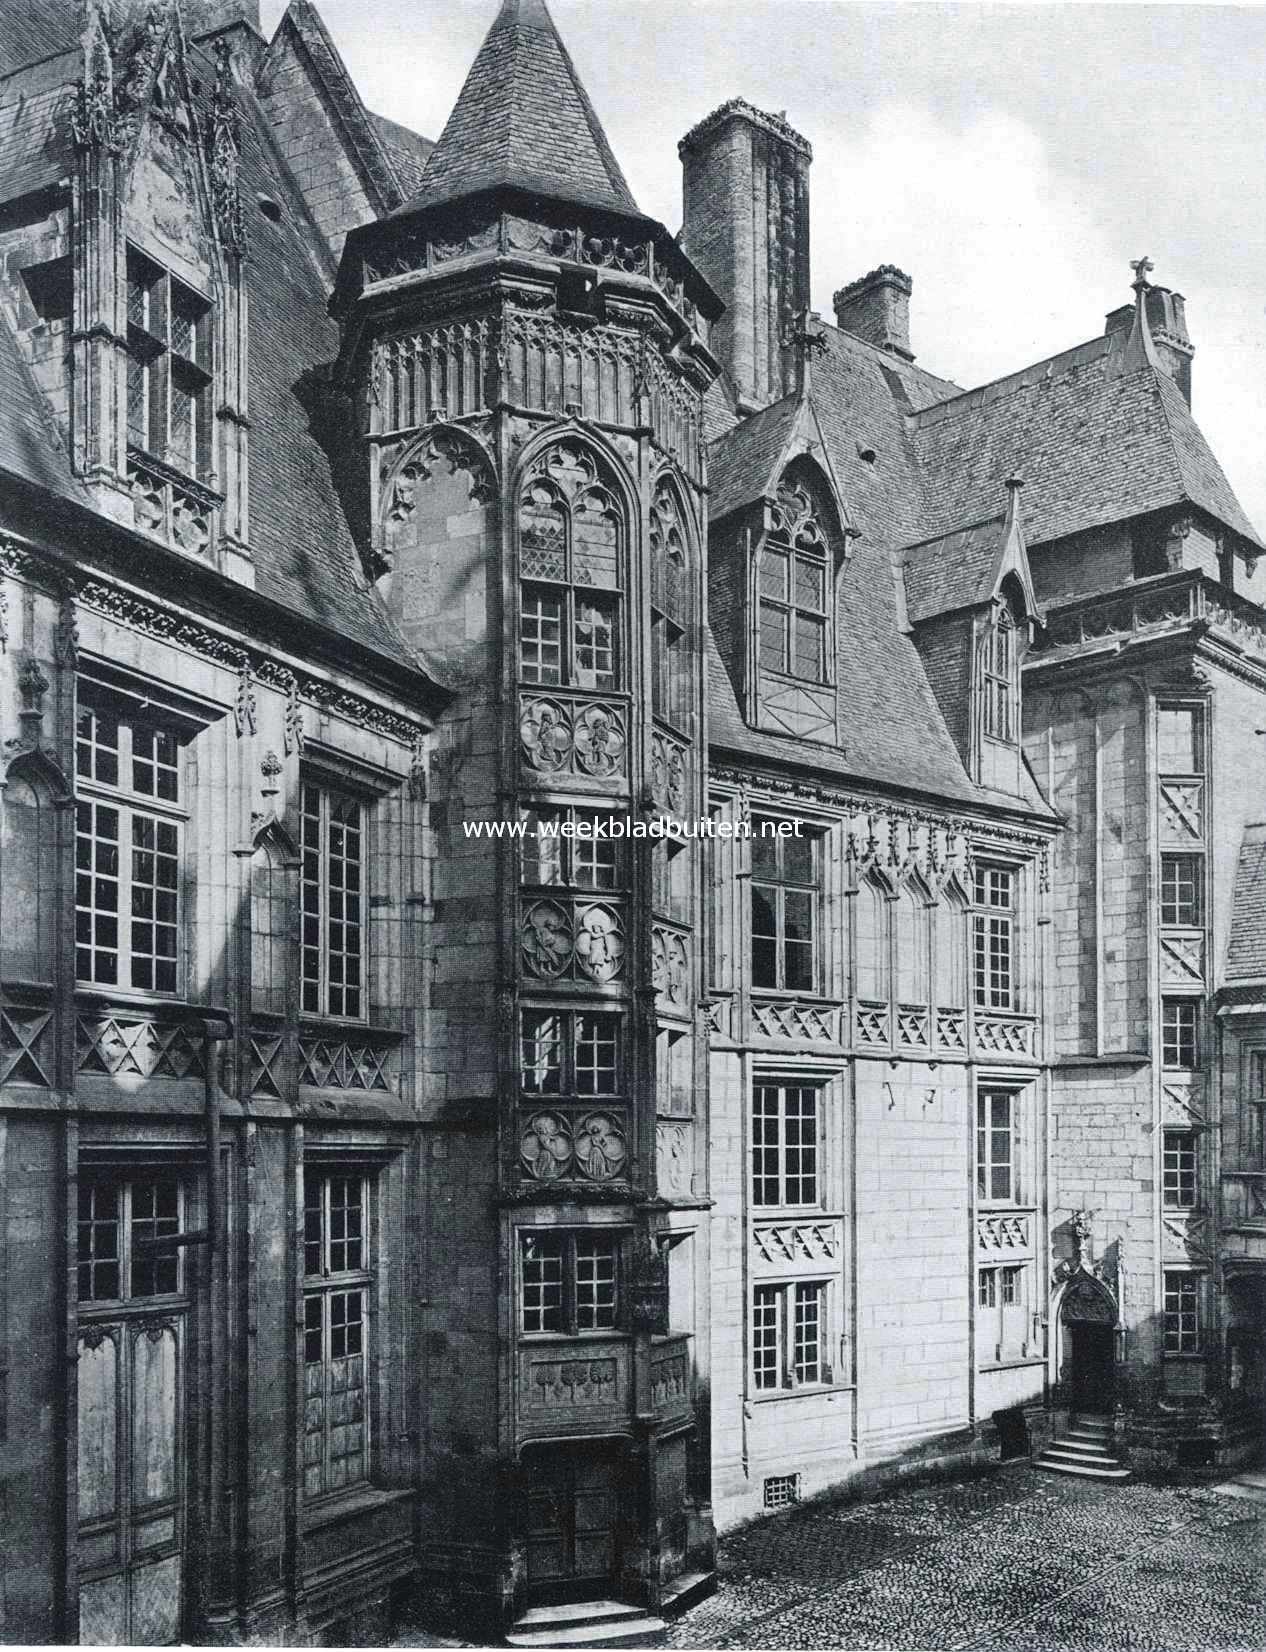 Bourges, de stad der historie. De woning van Jacques Coeur. Zijde aan den binnenhof